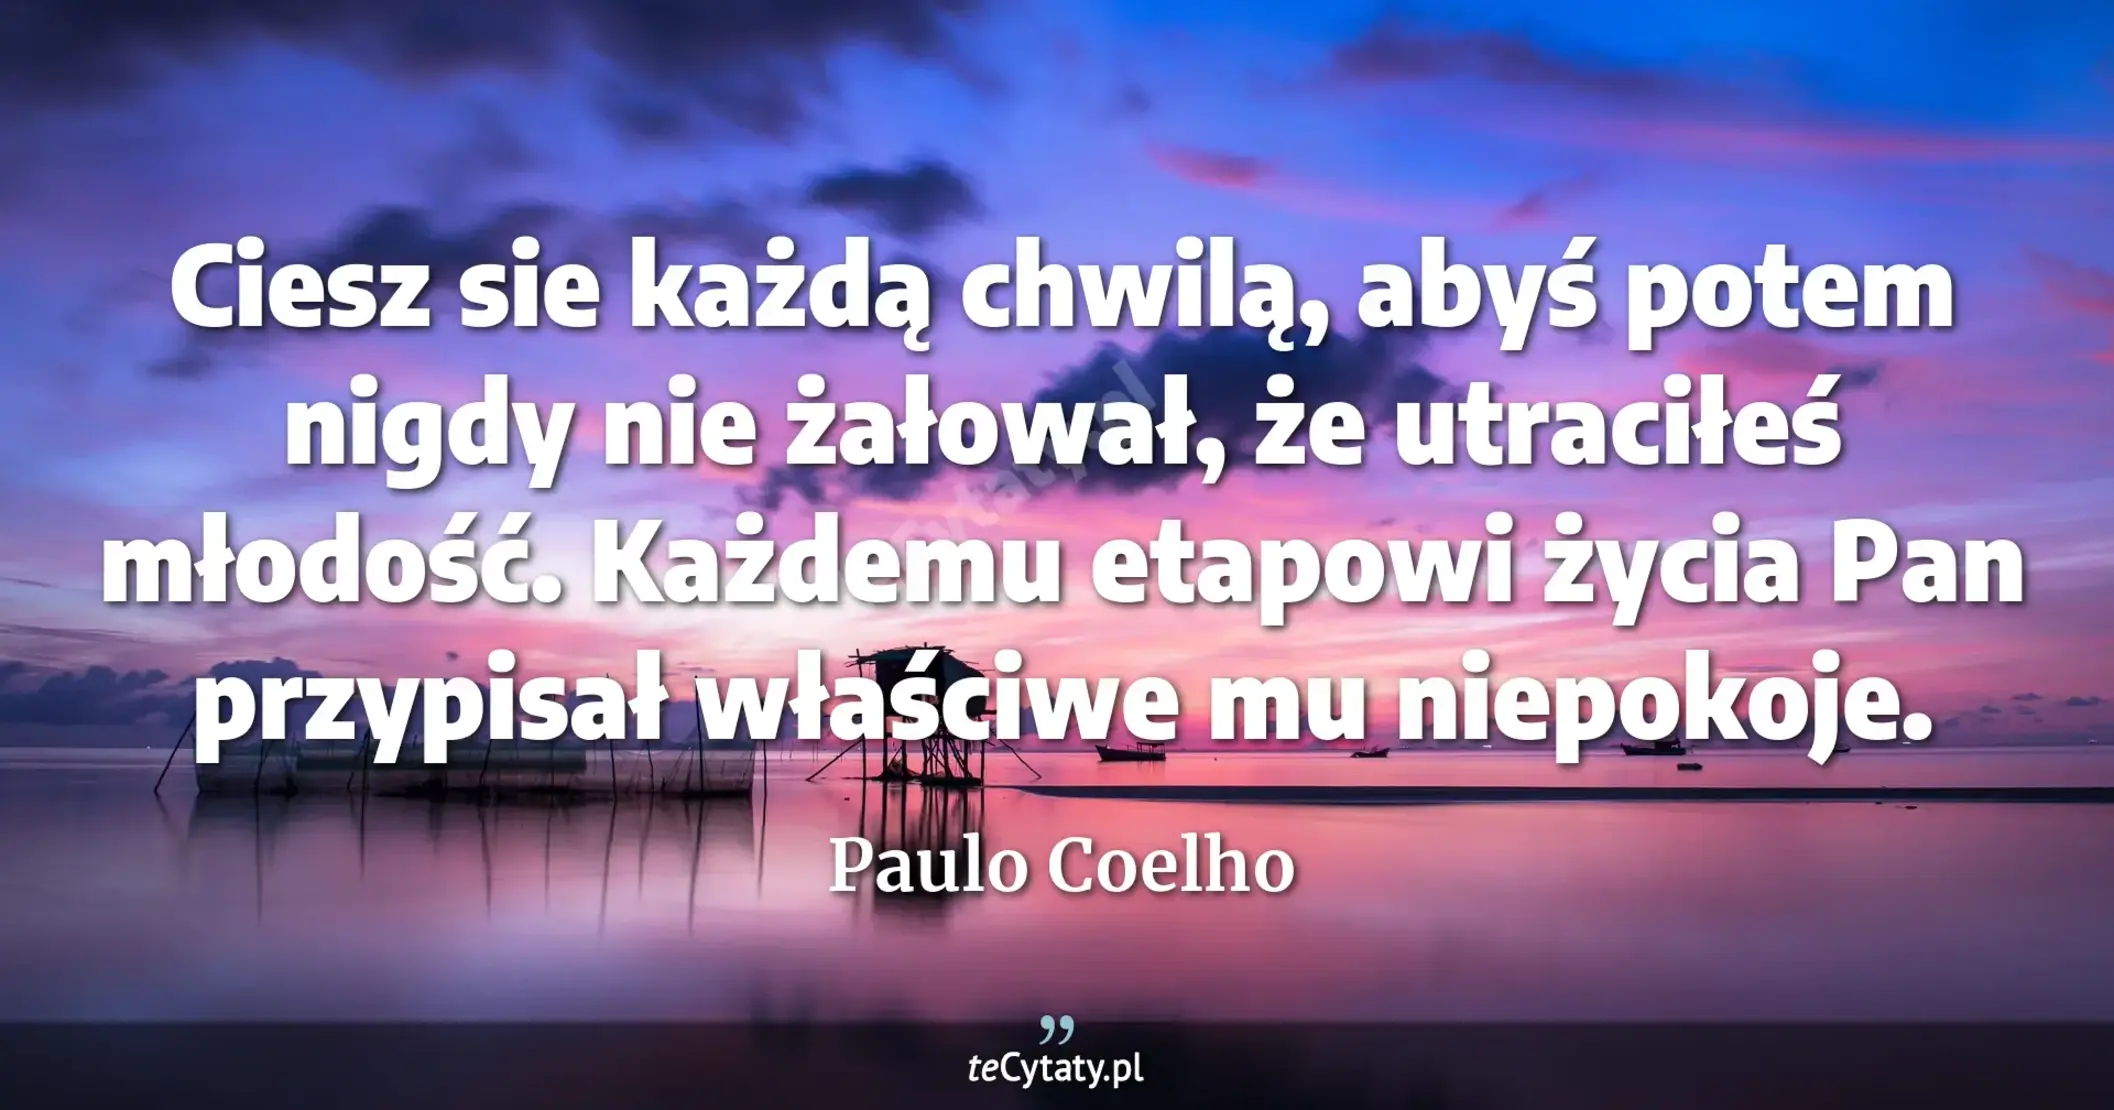 Ciesz sie każdą chwilą, abyś potem nigdy nie żałował, że utraciłeś młodość. Każdemu etapowi życia Pan przypisał właściwe mu niepokoje. - Paulo Coelho